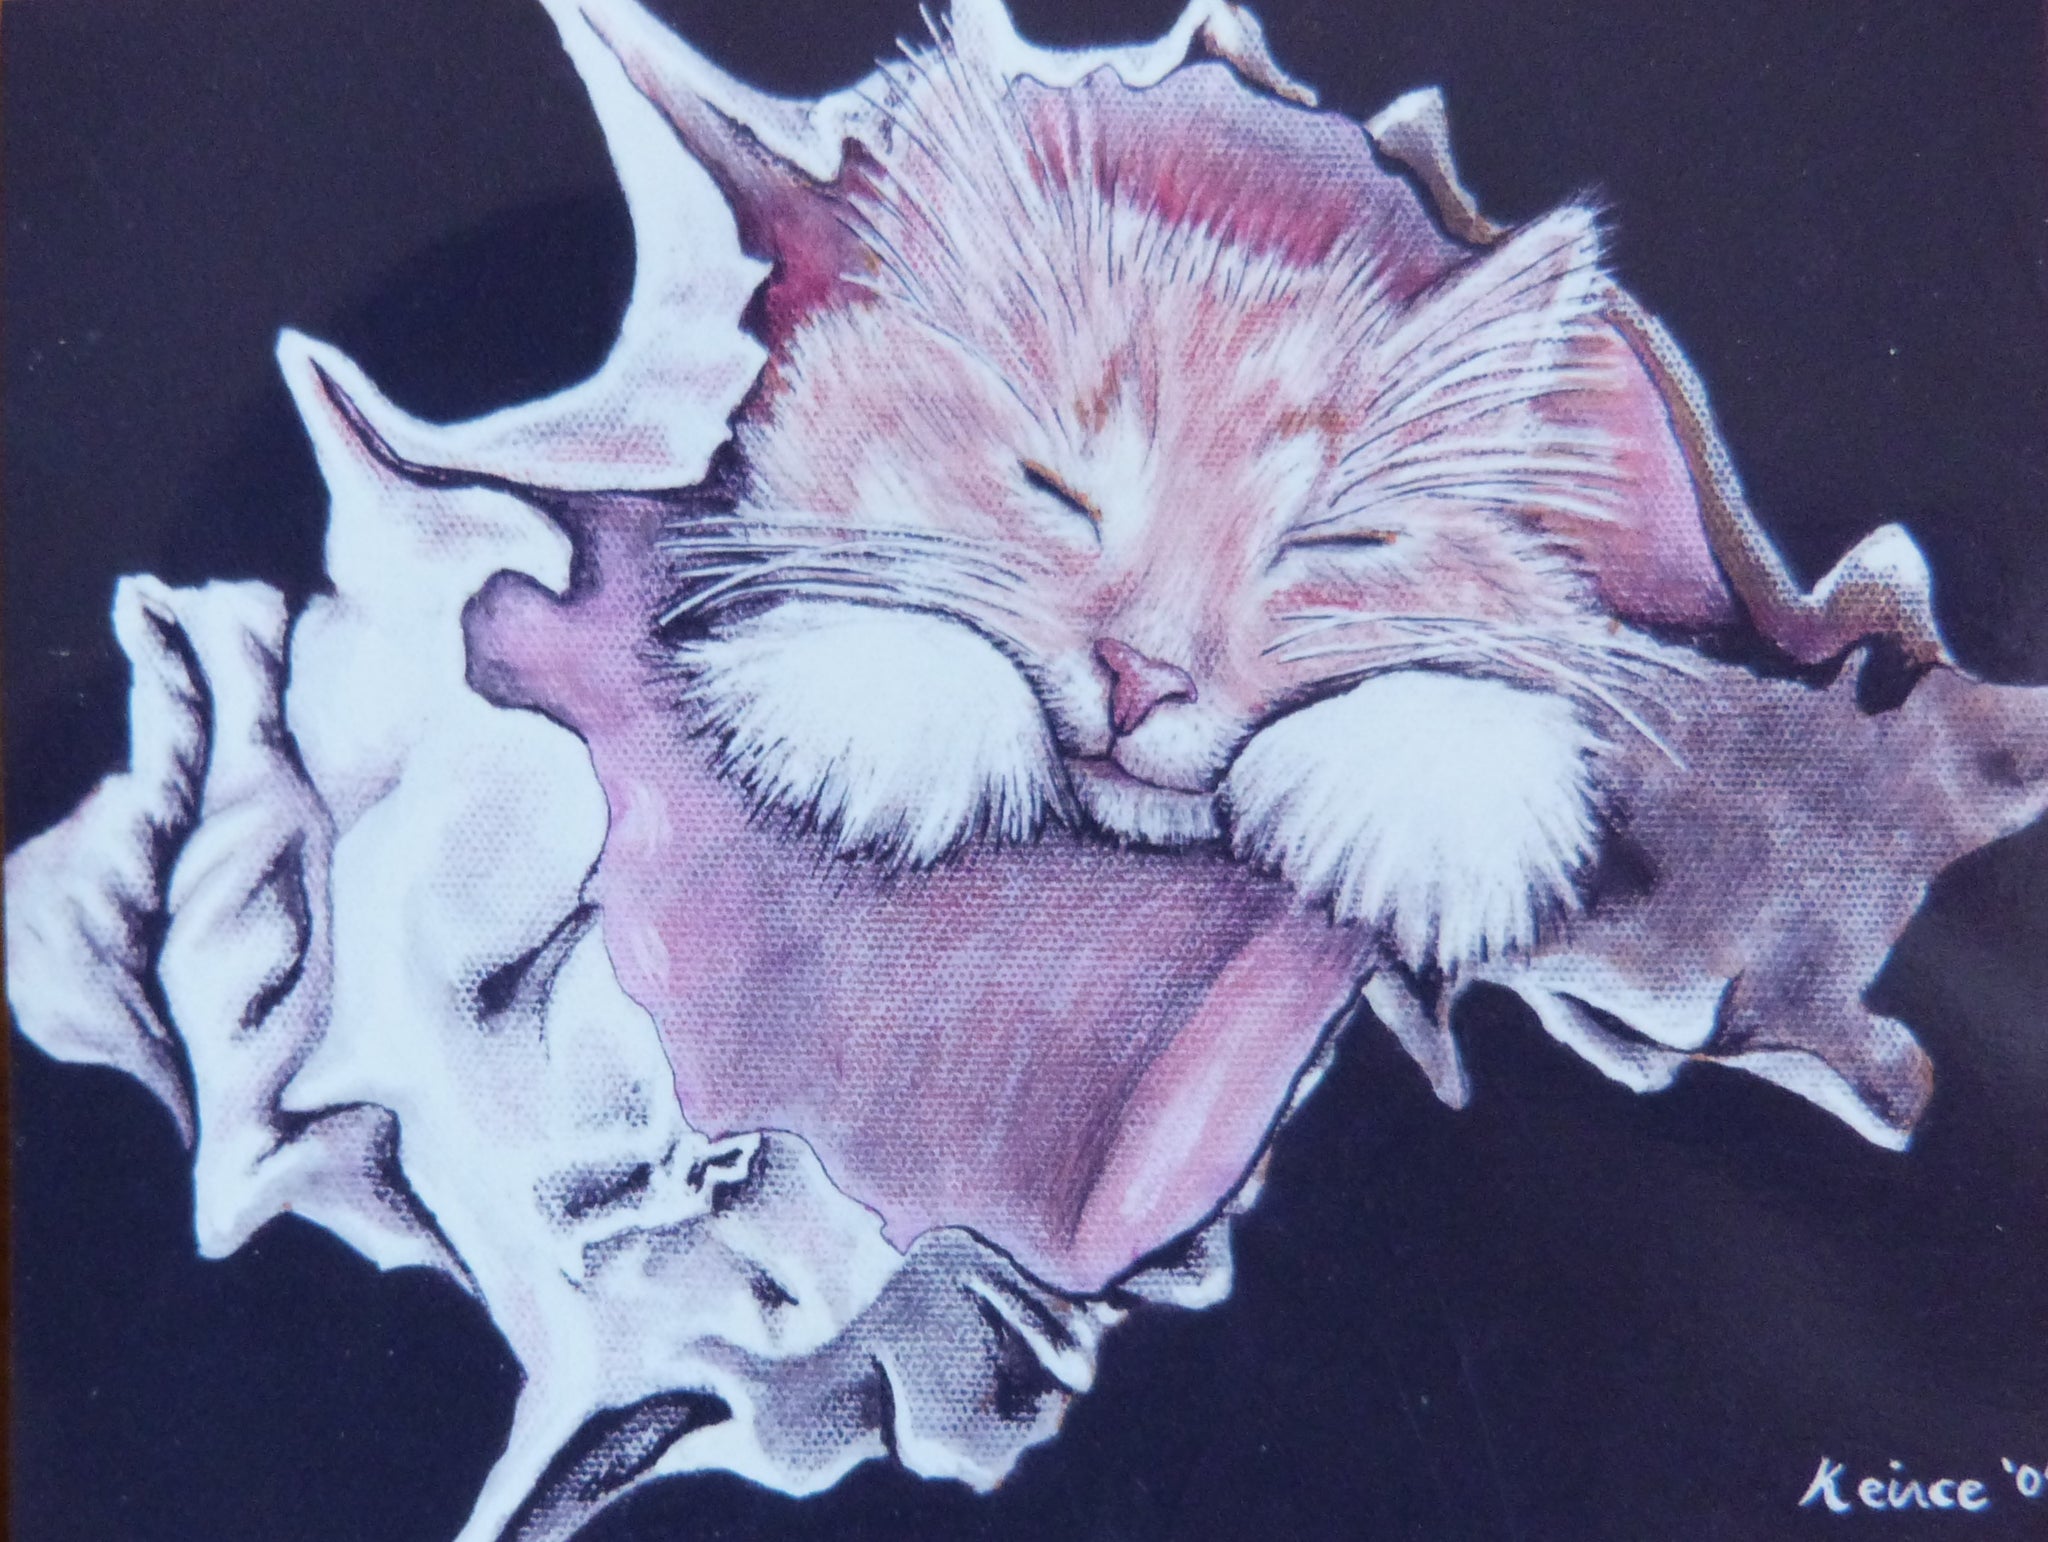 Minature - Debra Keirce "Cat Nap"